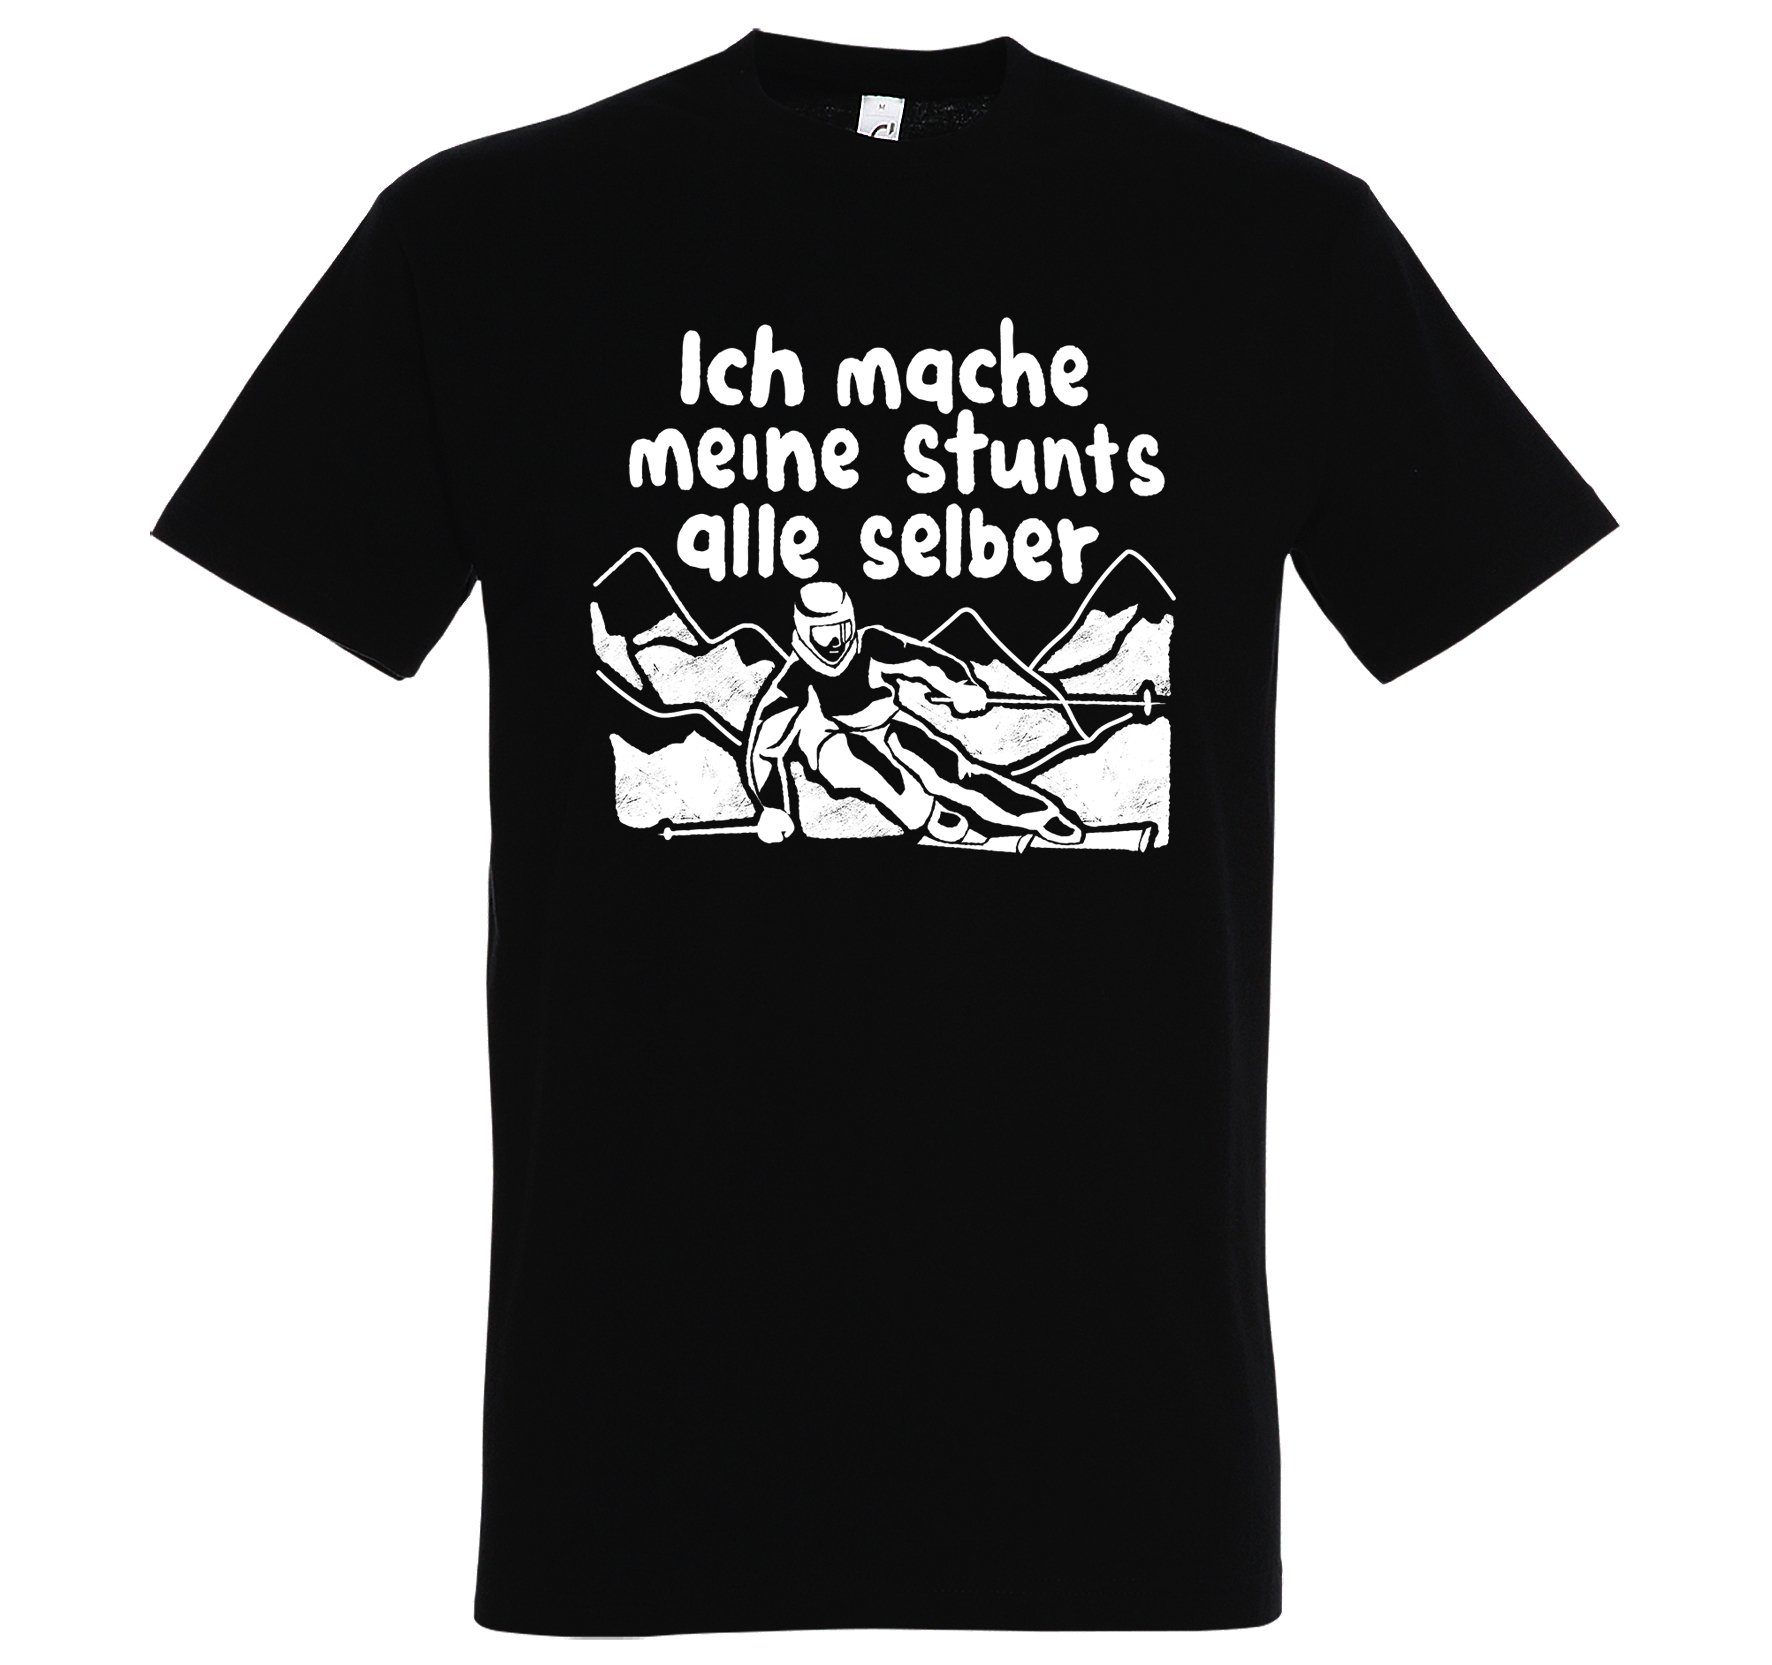 Youth Designz Schwarz Mache Alle Frontprint T-Shirt Herren mit trendigem Selber Stunts Shirt Meine Ich